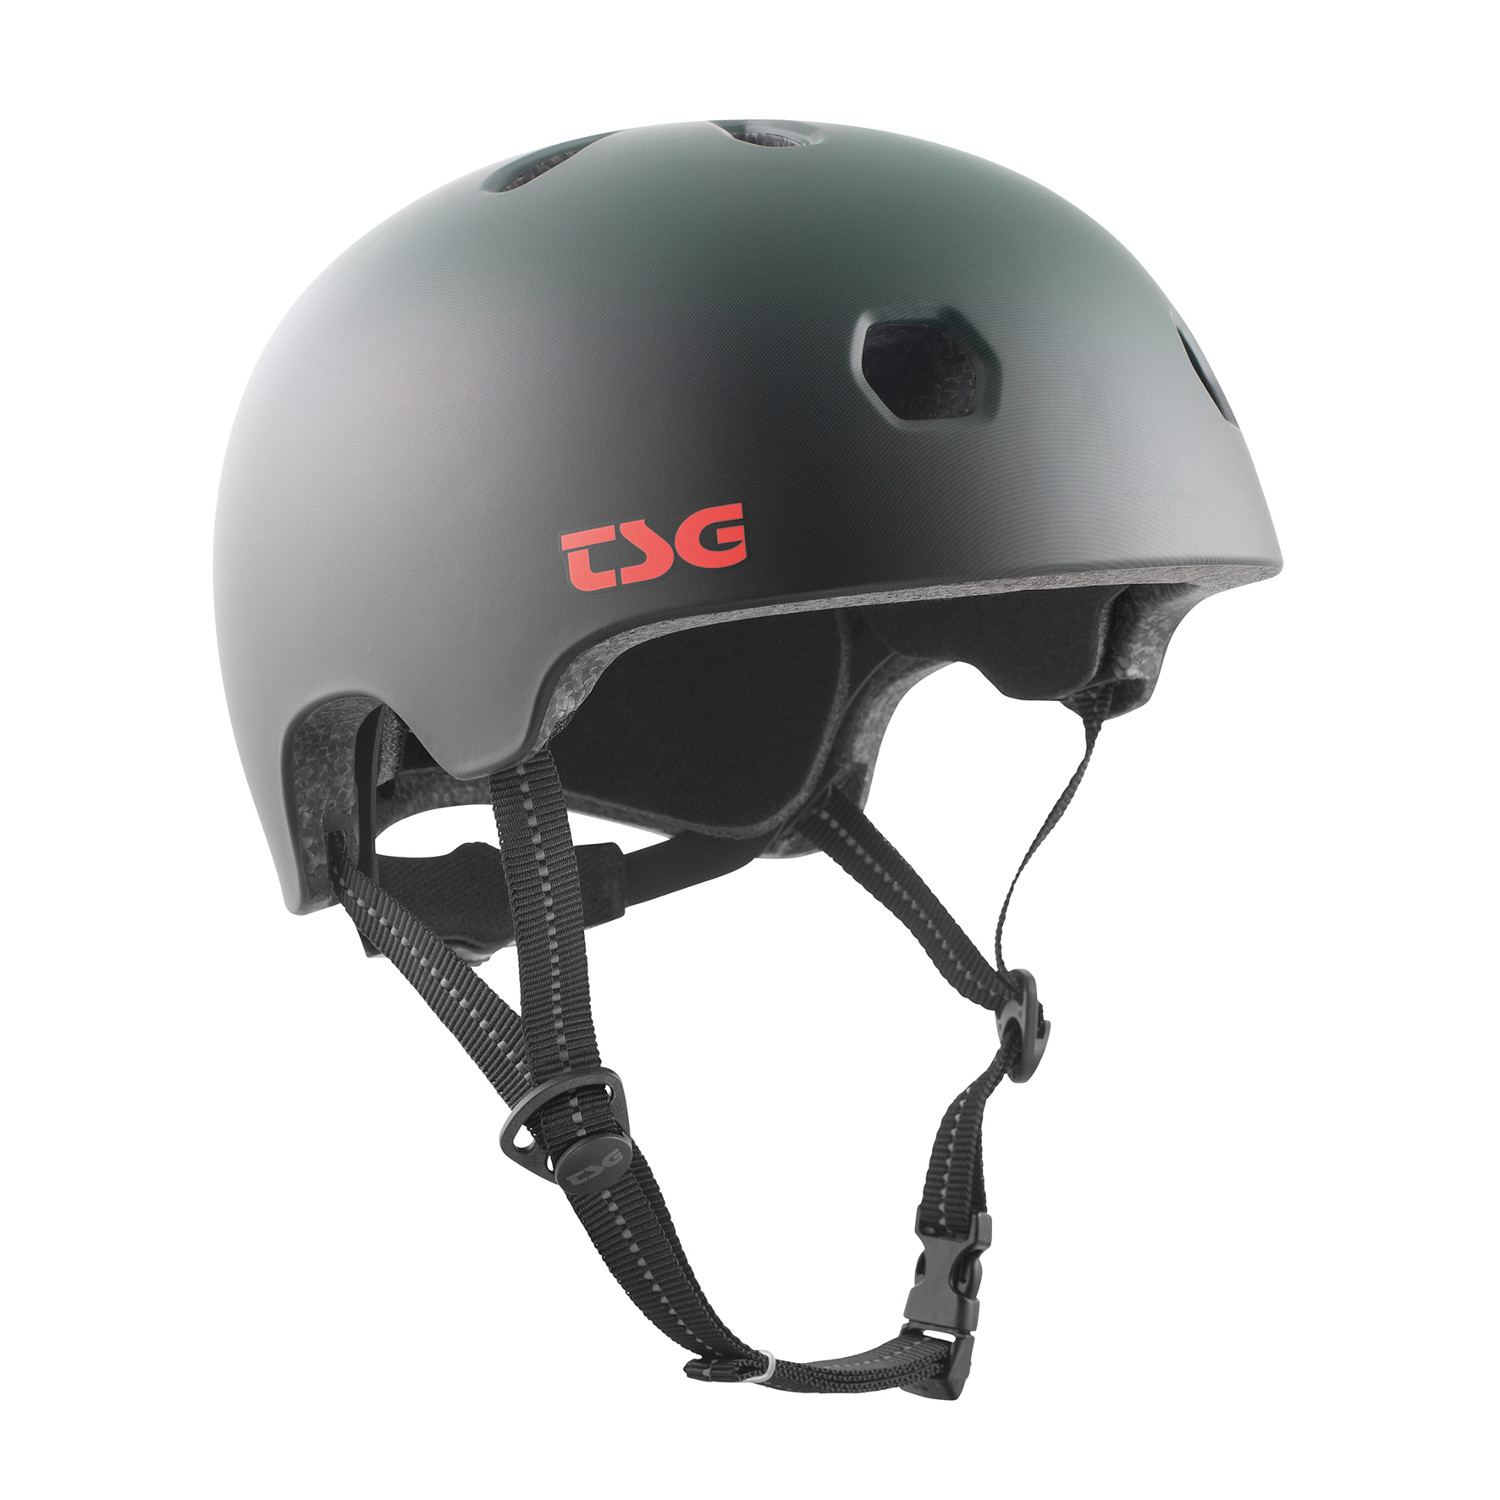 TSG BMX/Dirt Helm Meta Graphic Design - Matter